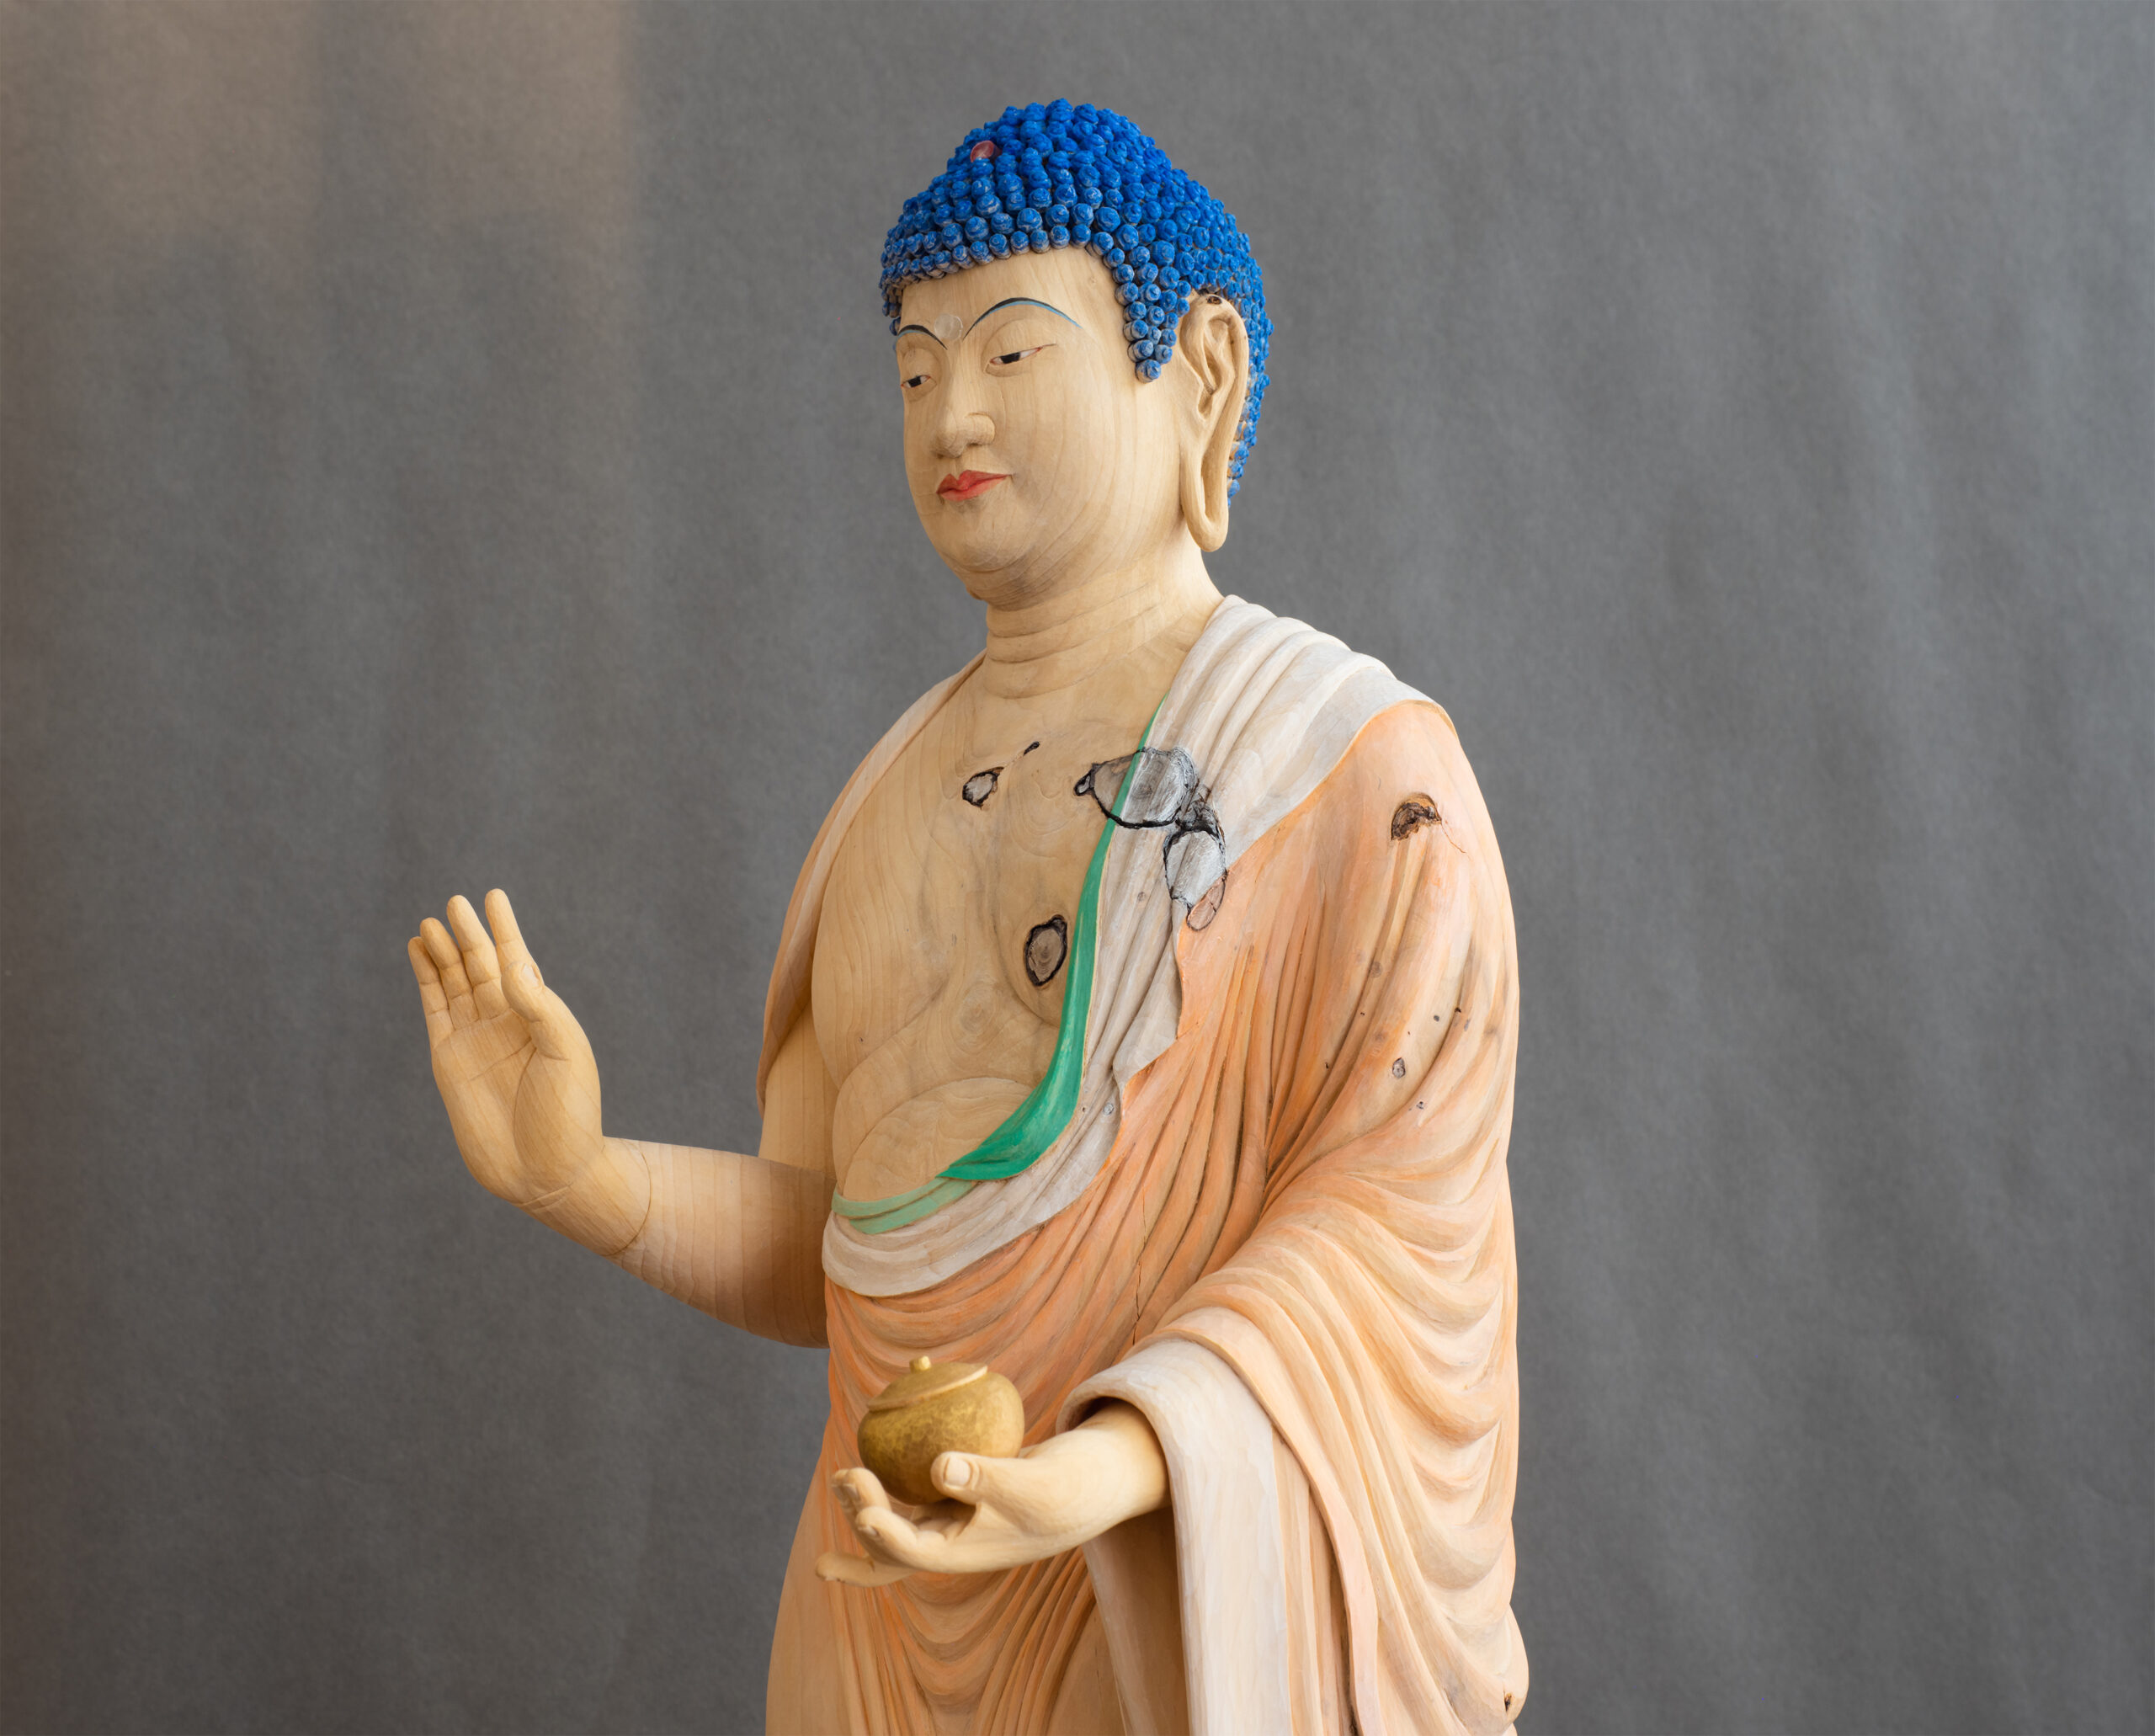 The Standing Statue of Yakushi Nyorai - 仏像・肖像の制作、修復の 